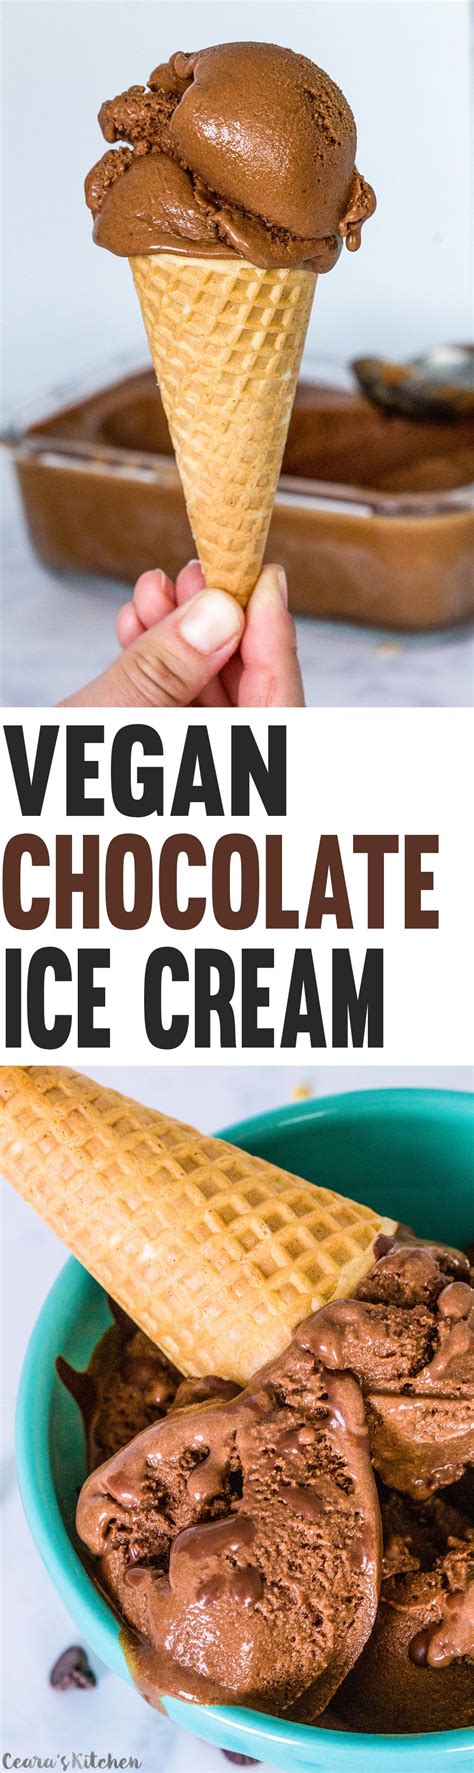 Get your free recipe download here! Vegan Chocolate Ice Cream | Recipe | Vegan dessert recipes, Vegan desserts, Dessert recipes